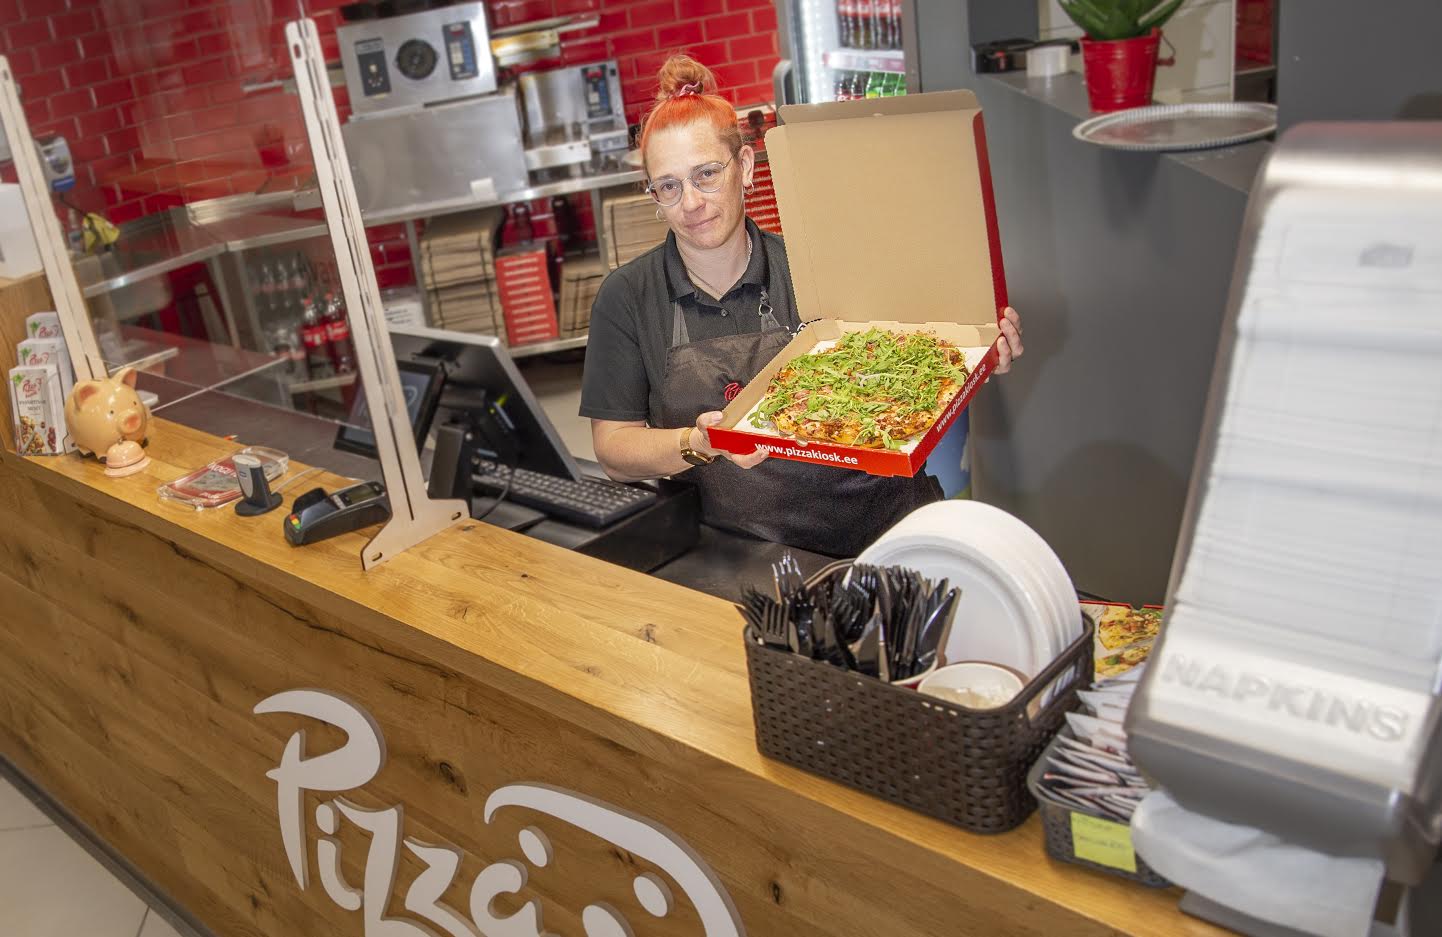 Kagukeskuses pitsasõpradele kõhutäidet pakkuva Võru Pizzakioski teenindaja Virge Reinsaar saab oma tööpanuse järgi kuus kätte 700–900eurose palga. Foto: AIGAR NAGEL